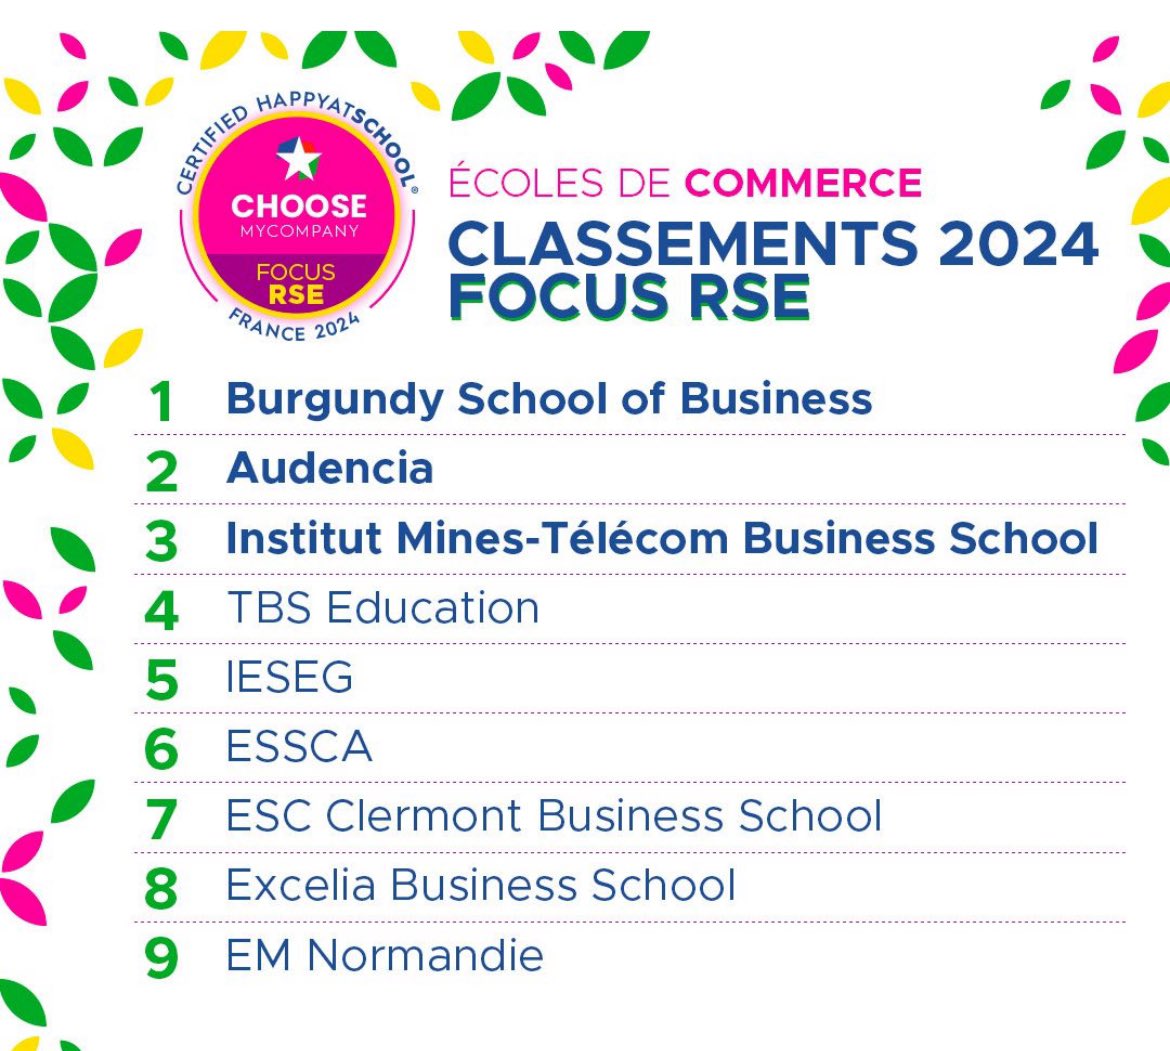 Le classement 2024 @choosemycompany Focus RSE des grandes écoles de management est sorti! @BurgundySB @audencia @imt_bs @tbs_education @IESEG @ESSCA_Ecole @ESCClermont @ExceliaGroup @EMNormandie